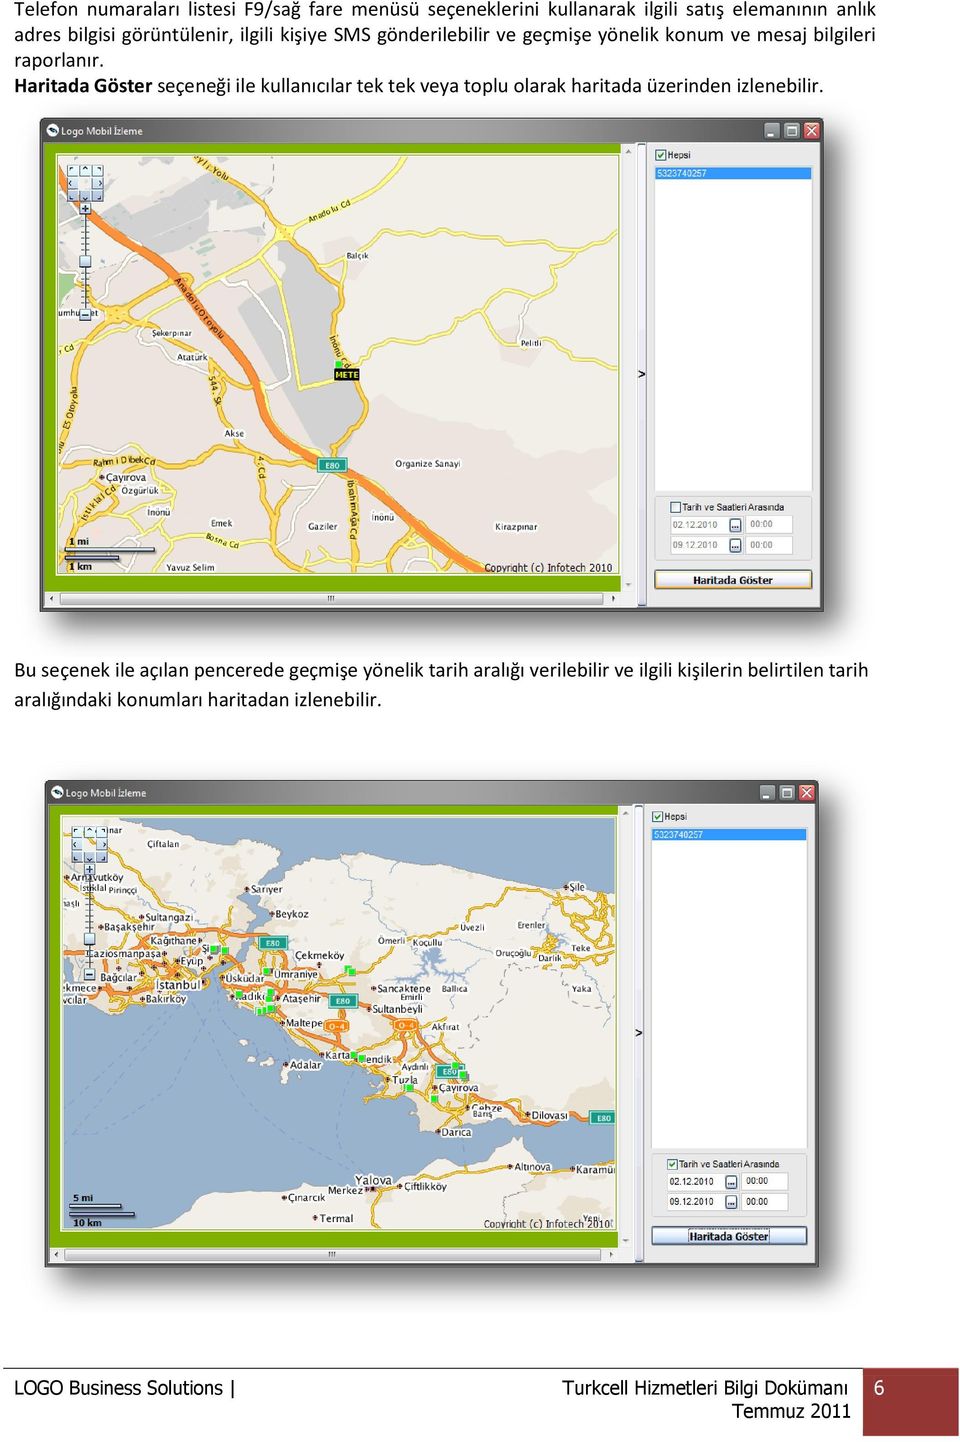 Haritada Göster seçeneği ile kullanıcılar tek tek veya toplu olarak haritada üzerinden izlenebilir.